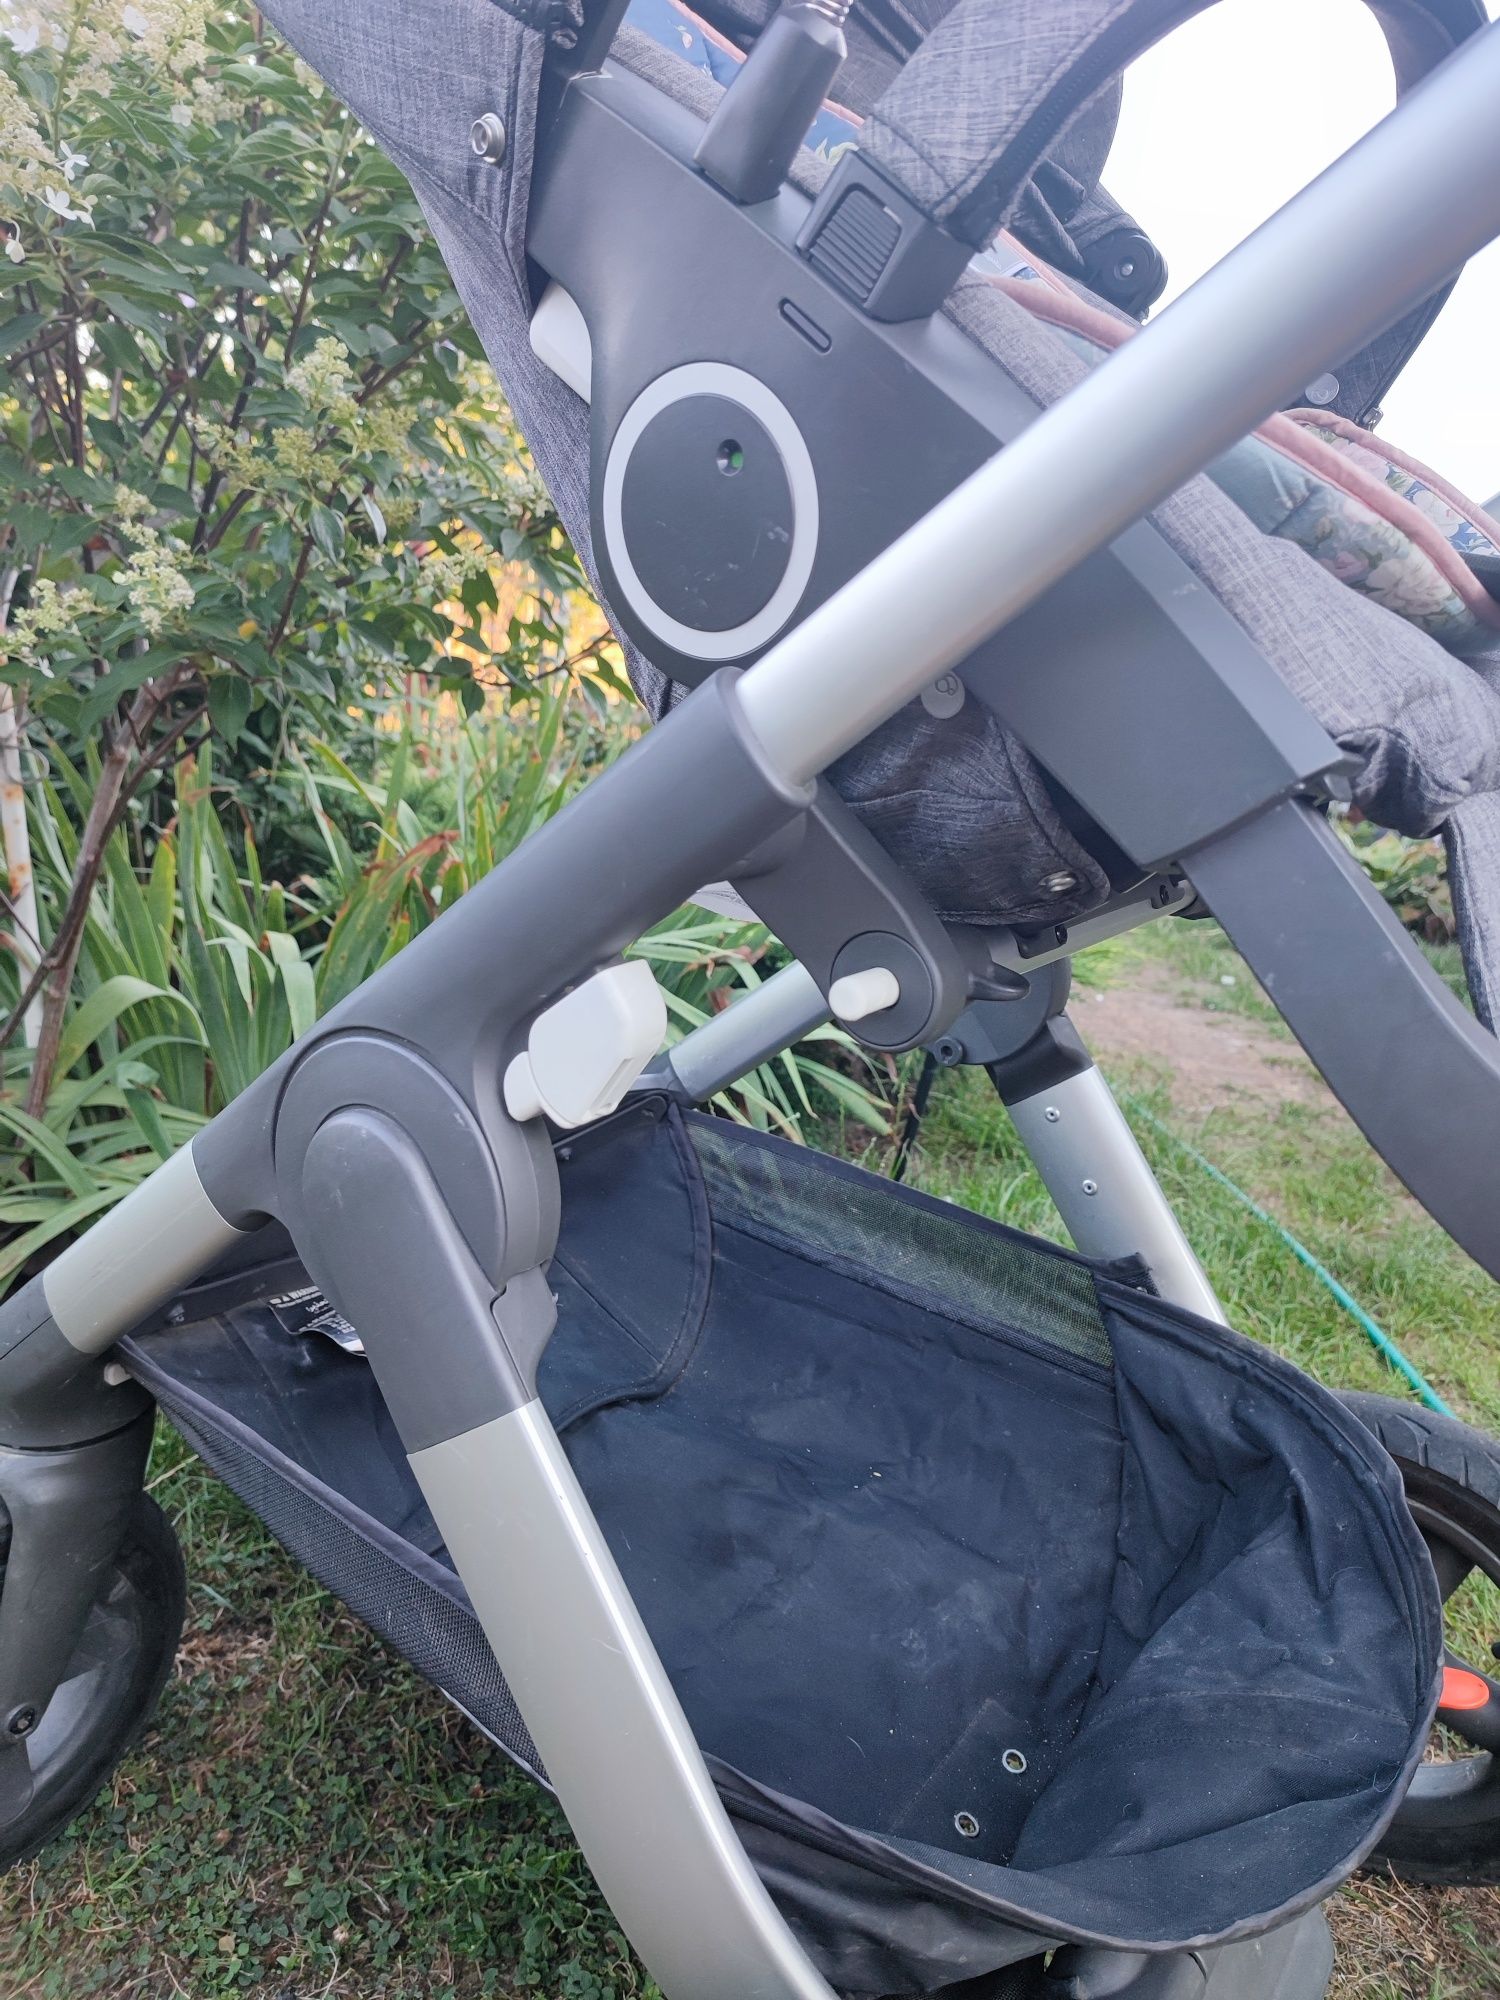 Wózek Stokke trailz spacerówka gondola summer kit torba skip hop duży